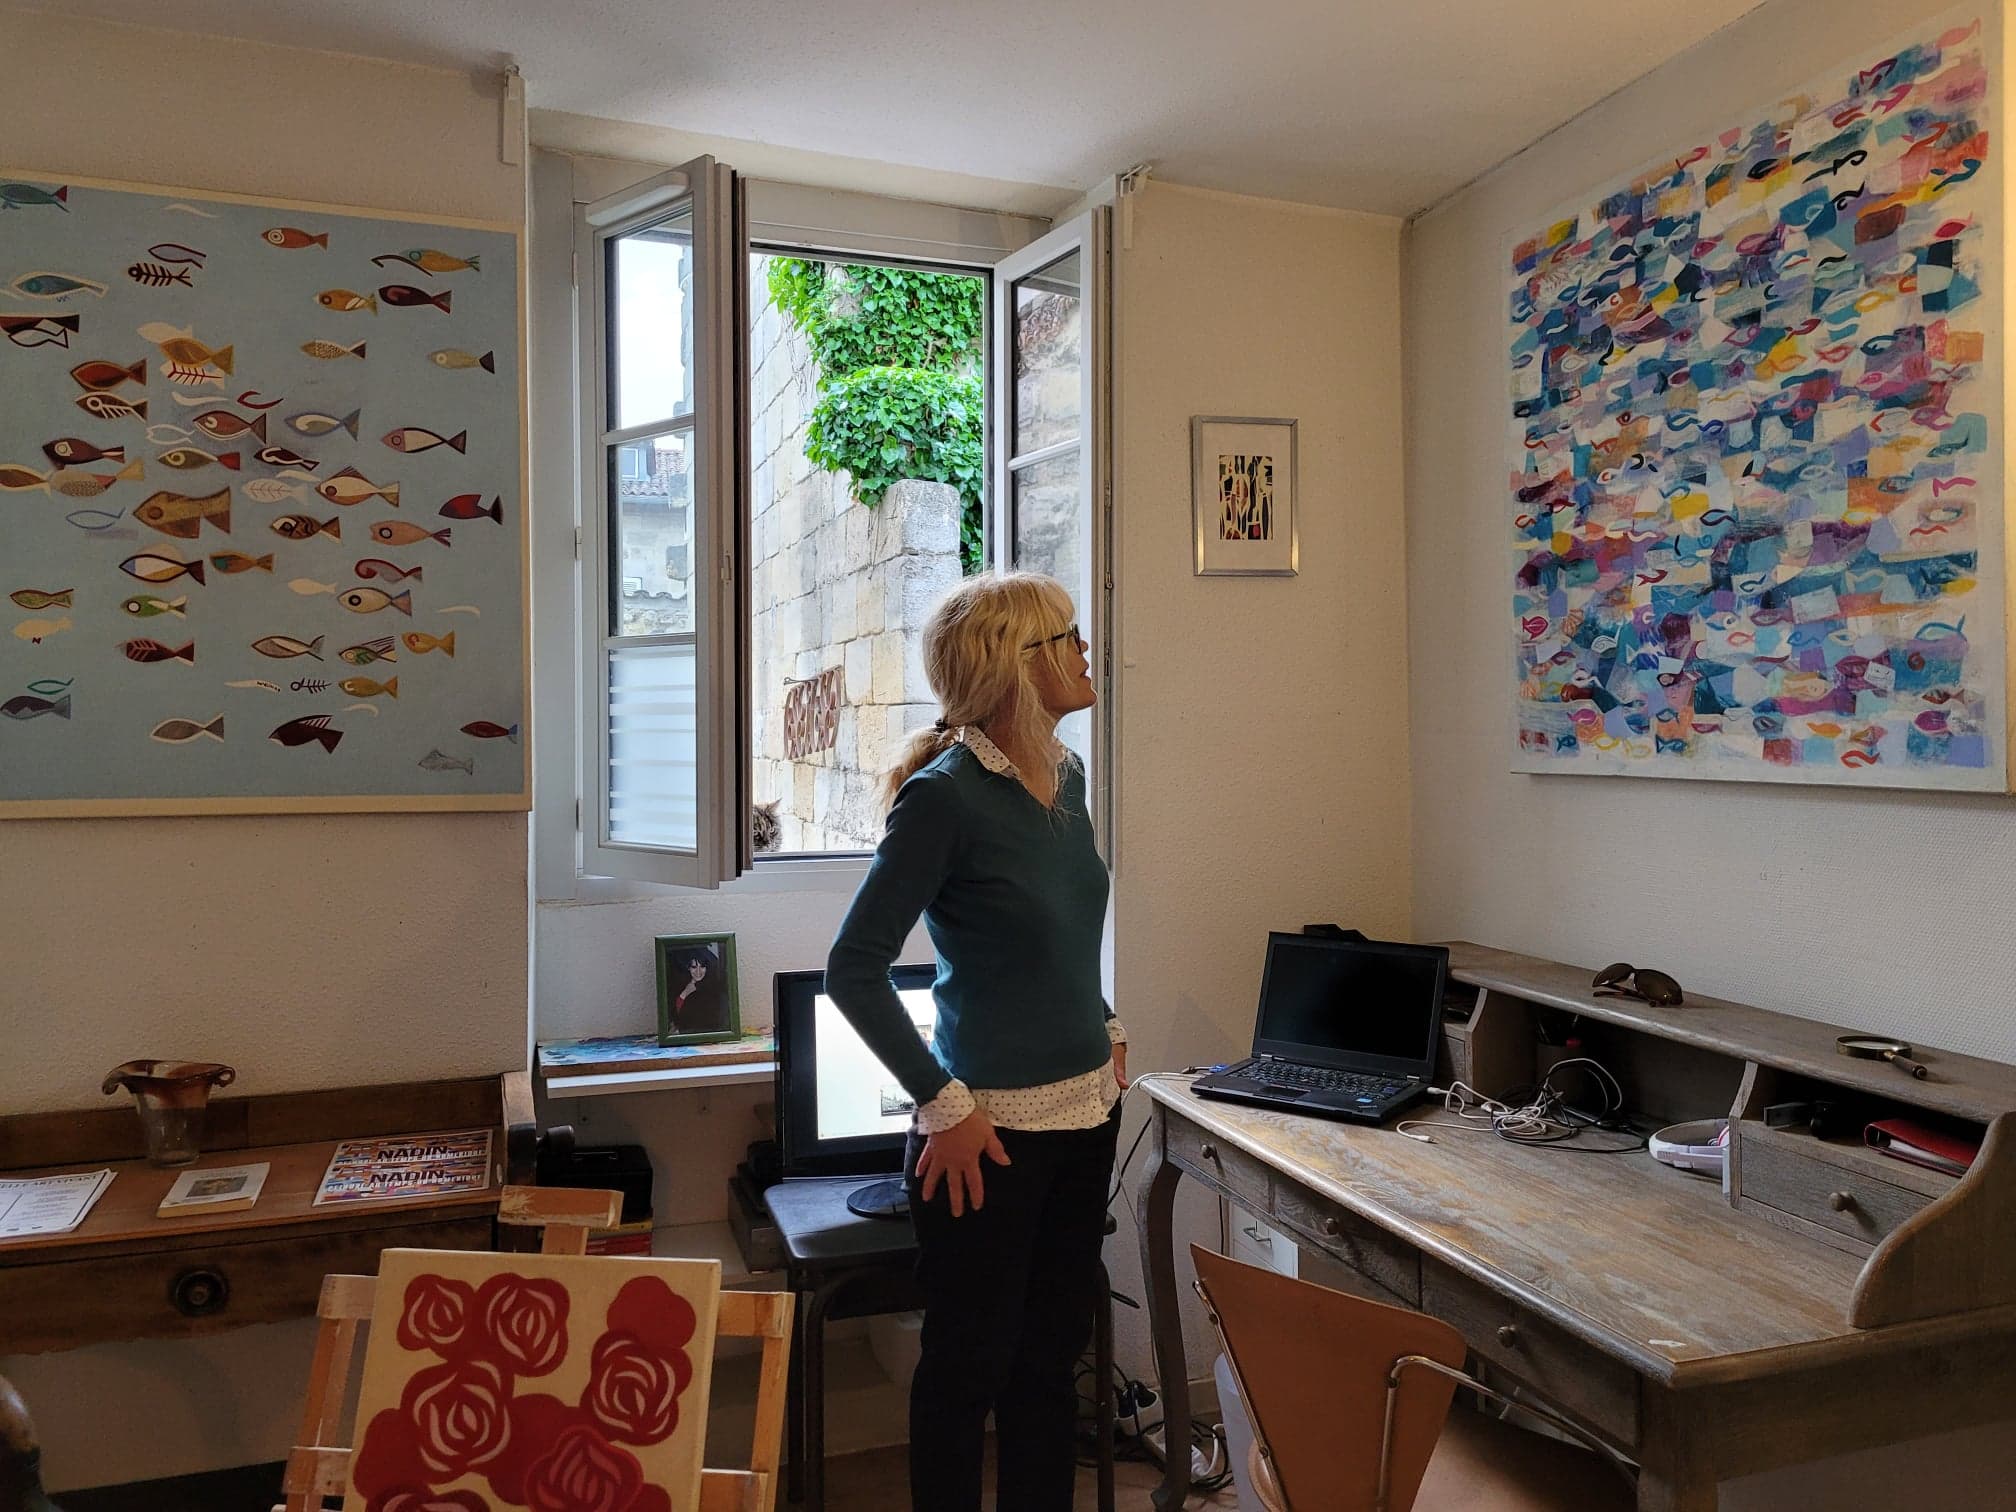 Une visiteuse regarde "Poisson", une toile de S. Nadin faite en 2019 de 100 x 100 cm